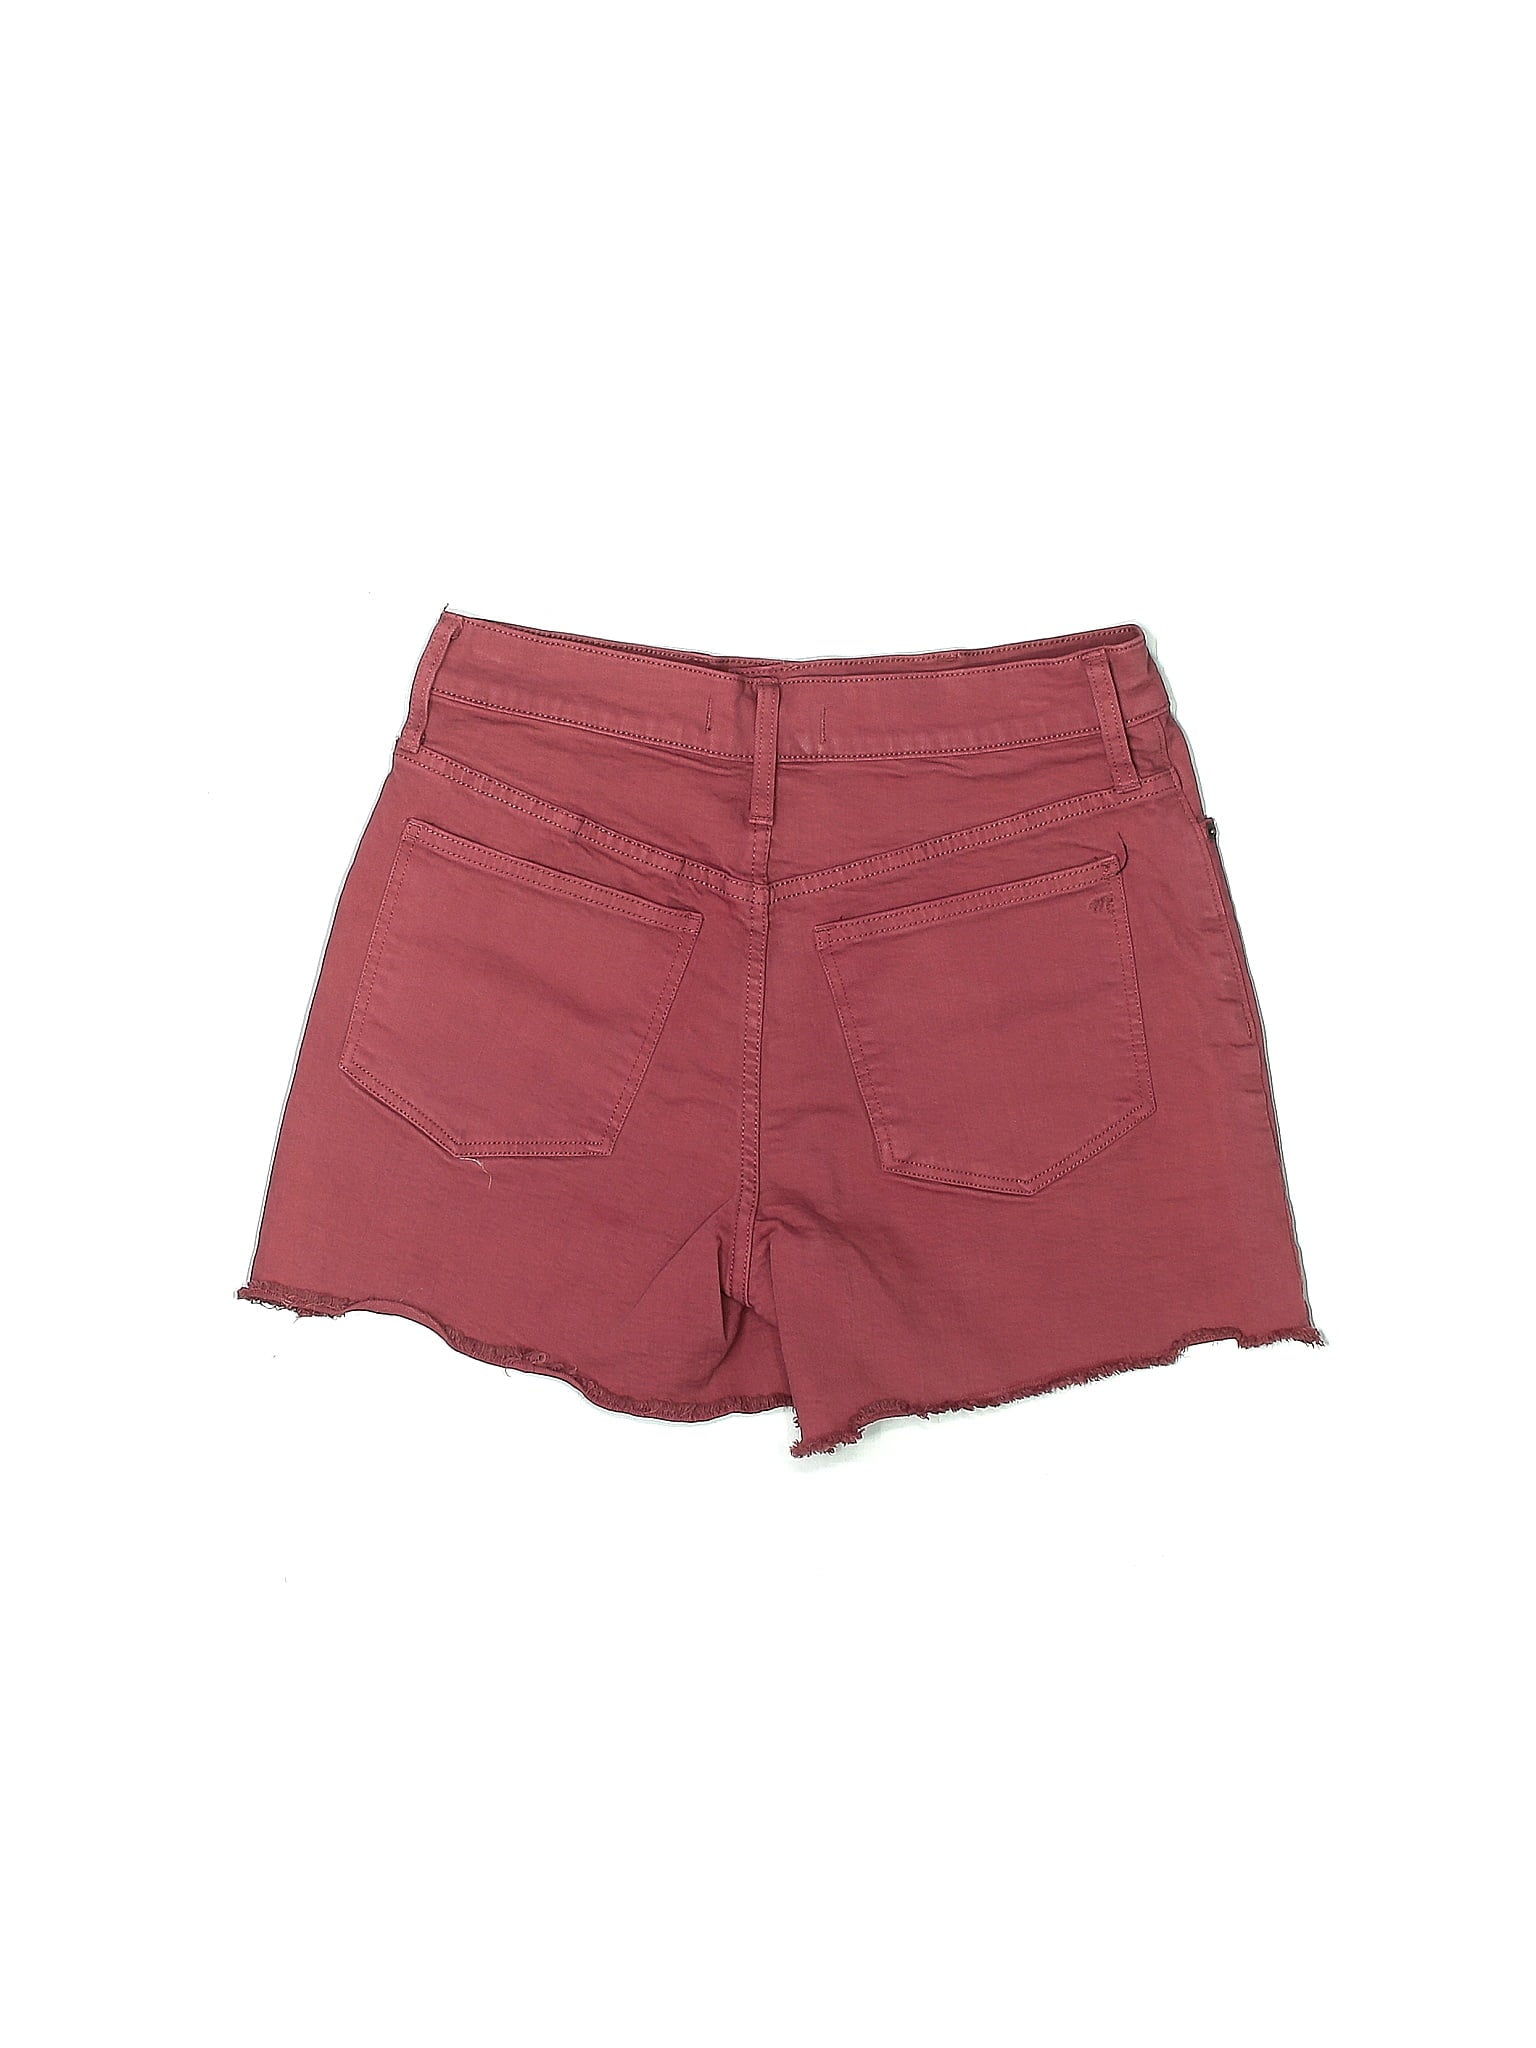 Mid-Rise Denim Shorts in Dark Wash waist size - 27